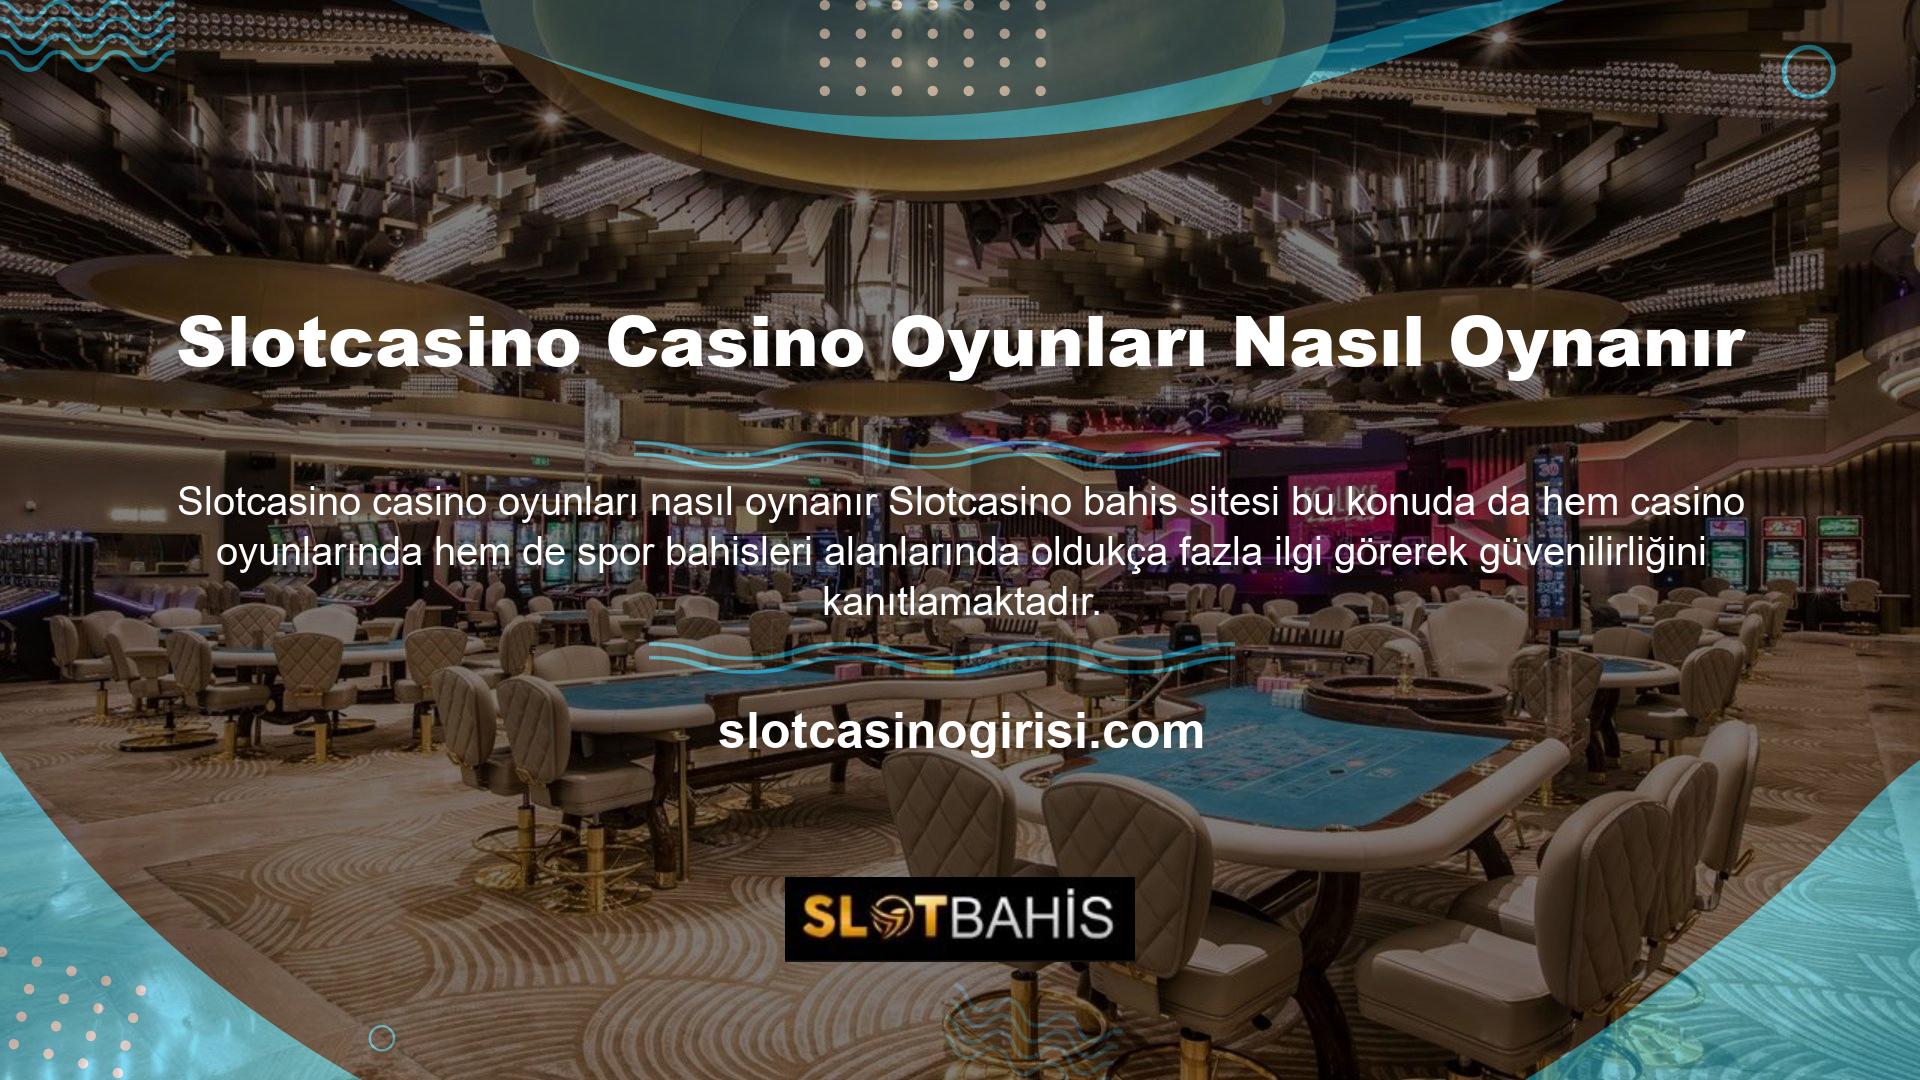 Slotcasino casino oyunları söz konusu olduğunda üyeler bu alanda sorunsuz bir ortamdan faydalanabilmektedir